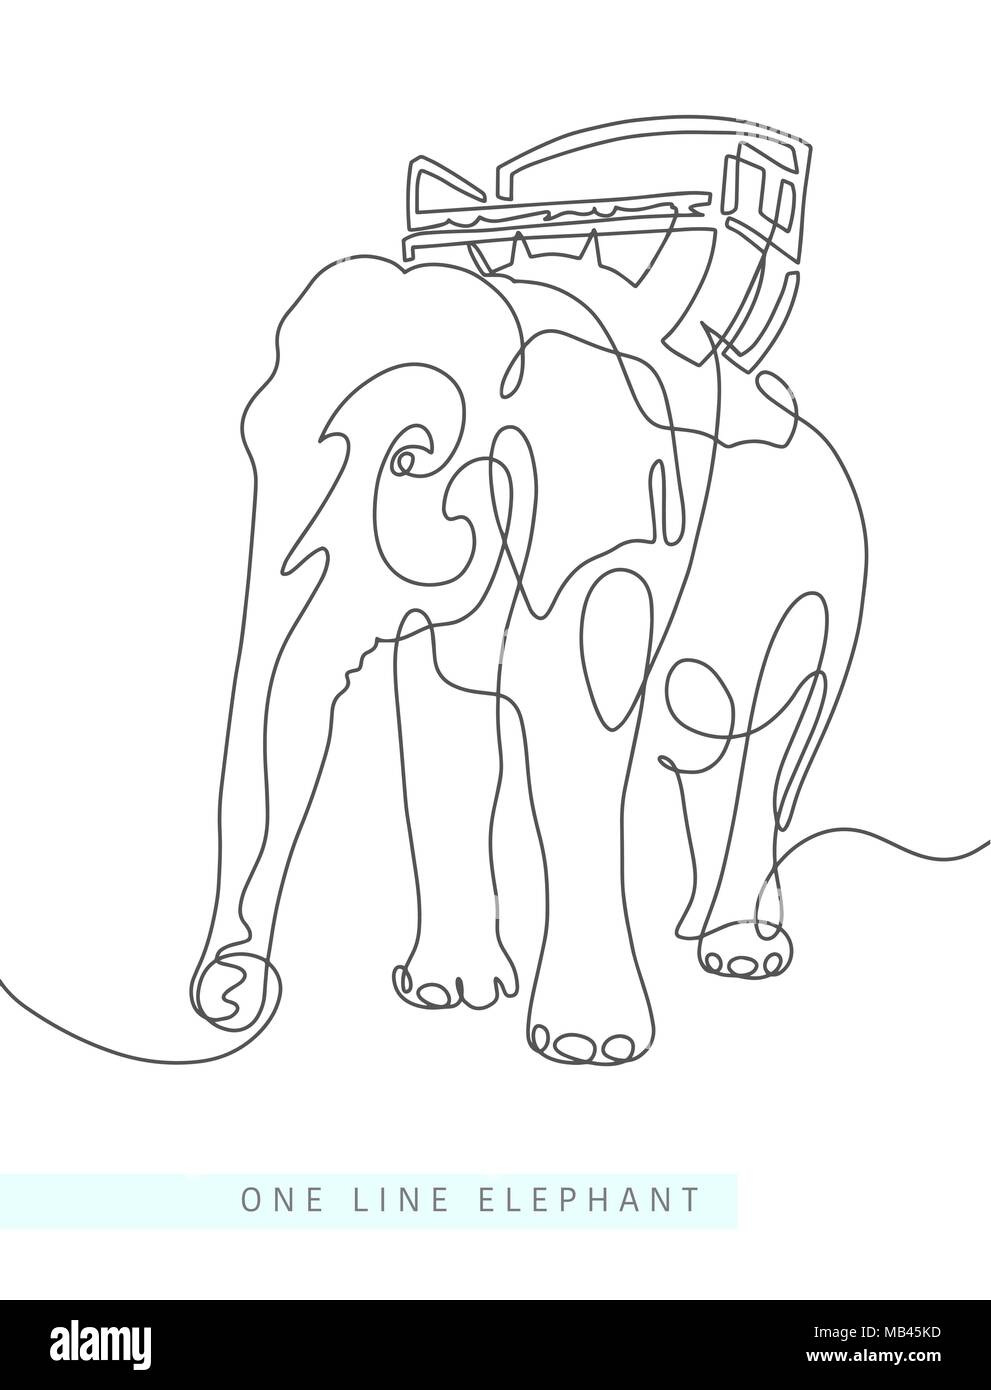 Une ligne continue de dessin de l'éléphant indien Illustration de Vecteur